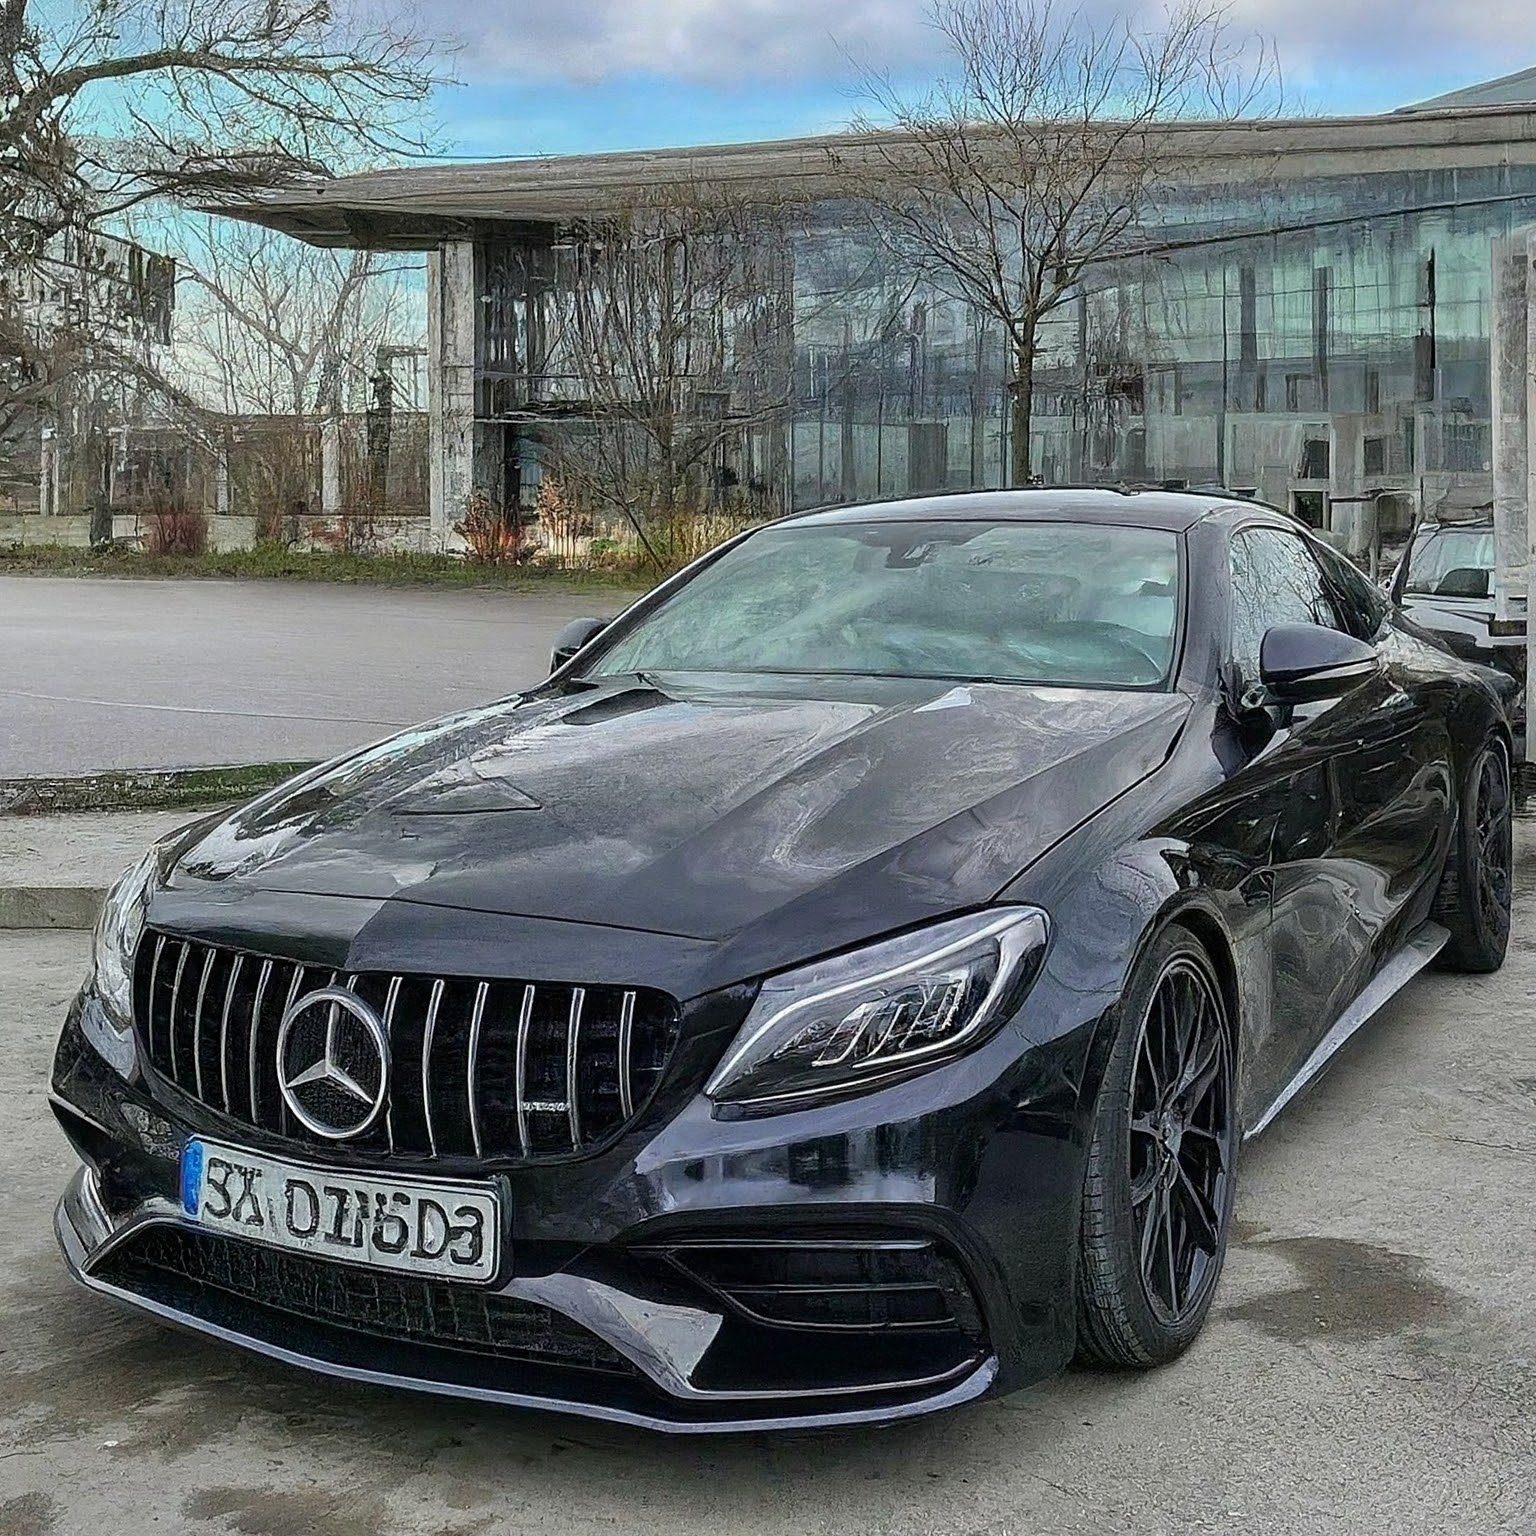 Mercedes Car Rental